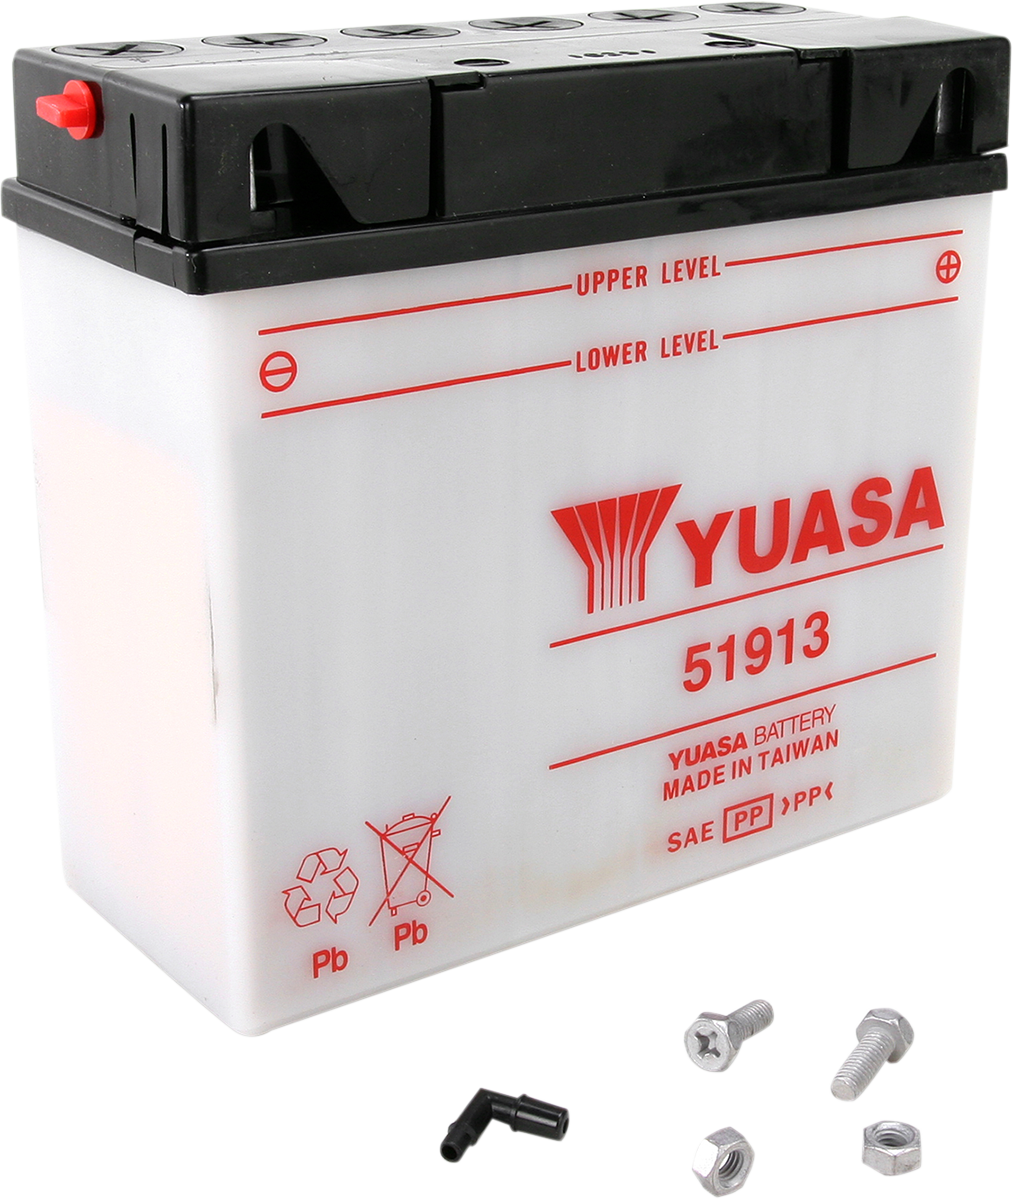 YUASA Battery - 51913 YUAM2219A